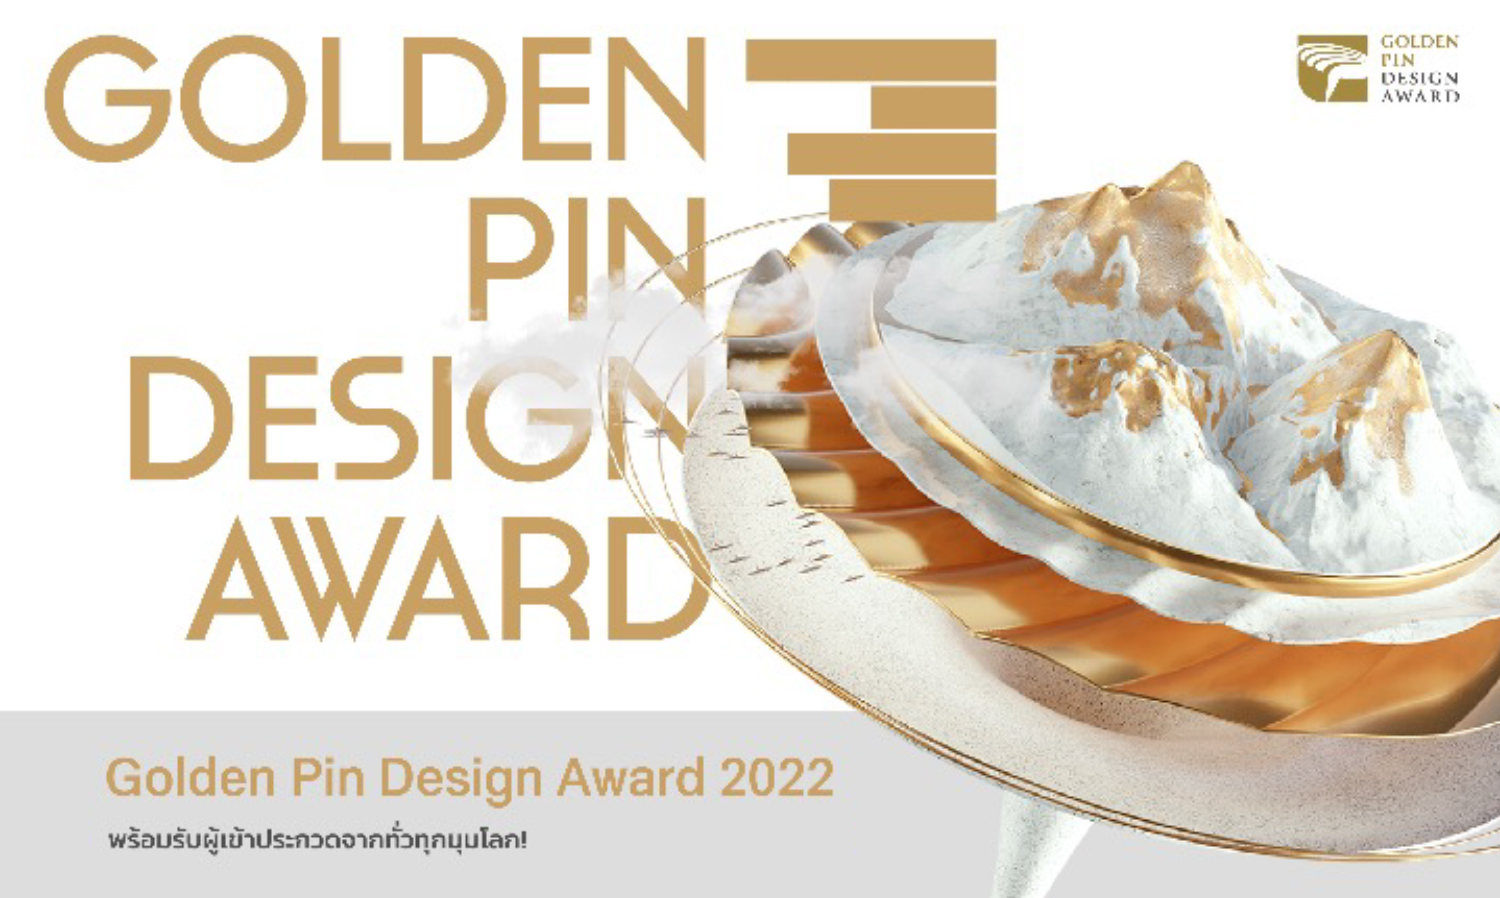 โอกาสสุดท้ายในการสมัคร Golden Pin Design Award 2022  การแข่งขันที่นักออกแบบชาวไทยพลาดไม่ได้ เพื่อแสดงศักยภาพของคนไทยบนเวทีออกแบบระดับโลก